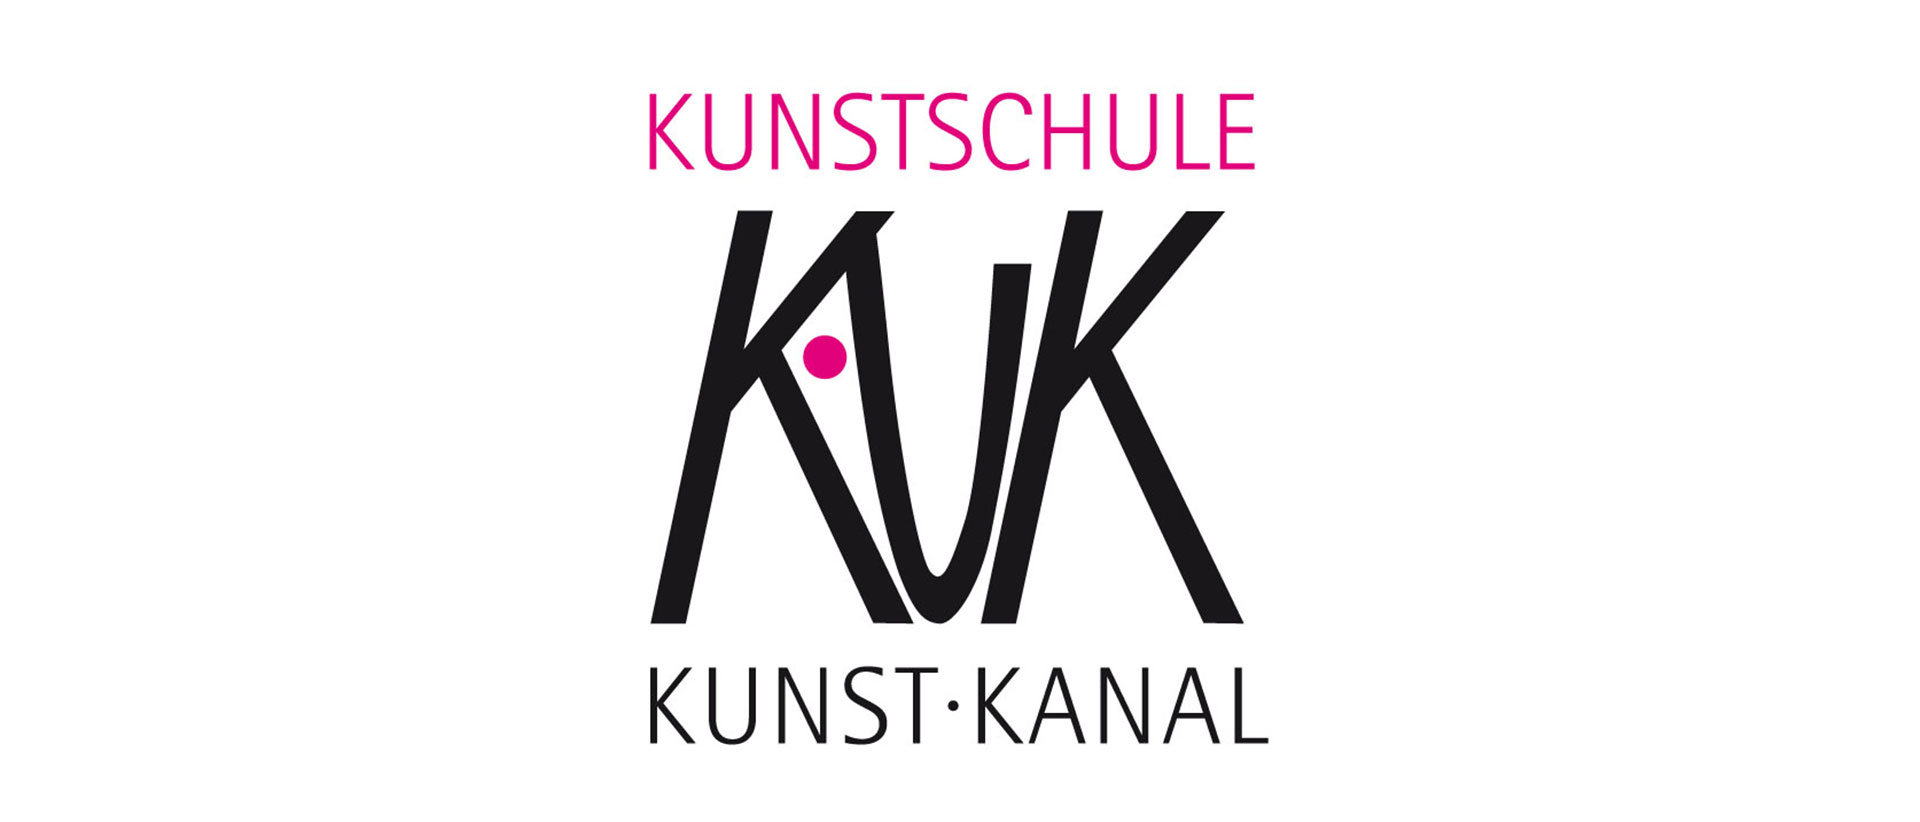 Kunstschule KUK Kunstkanal in Wertingen